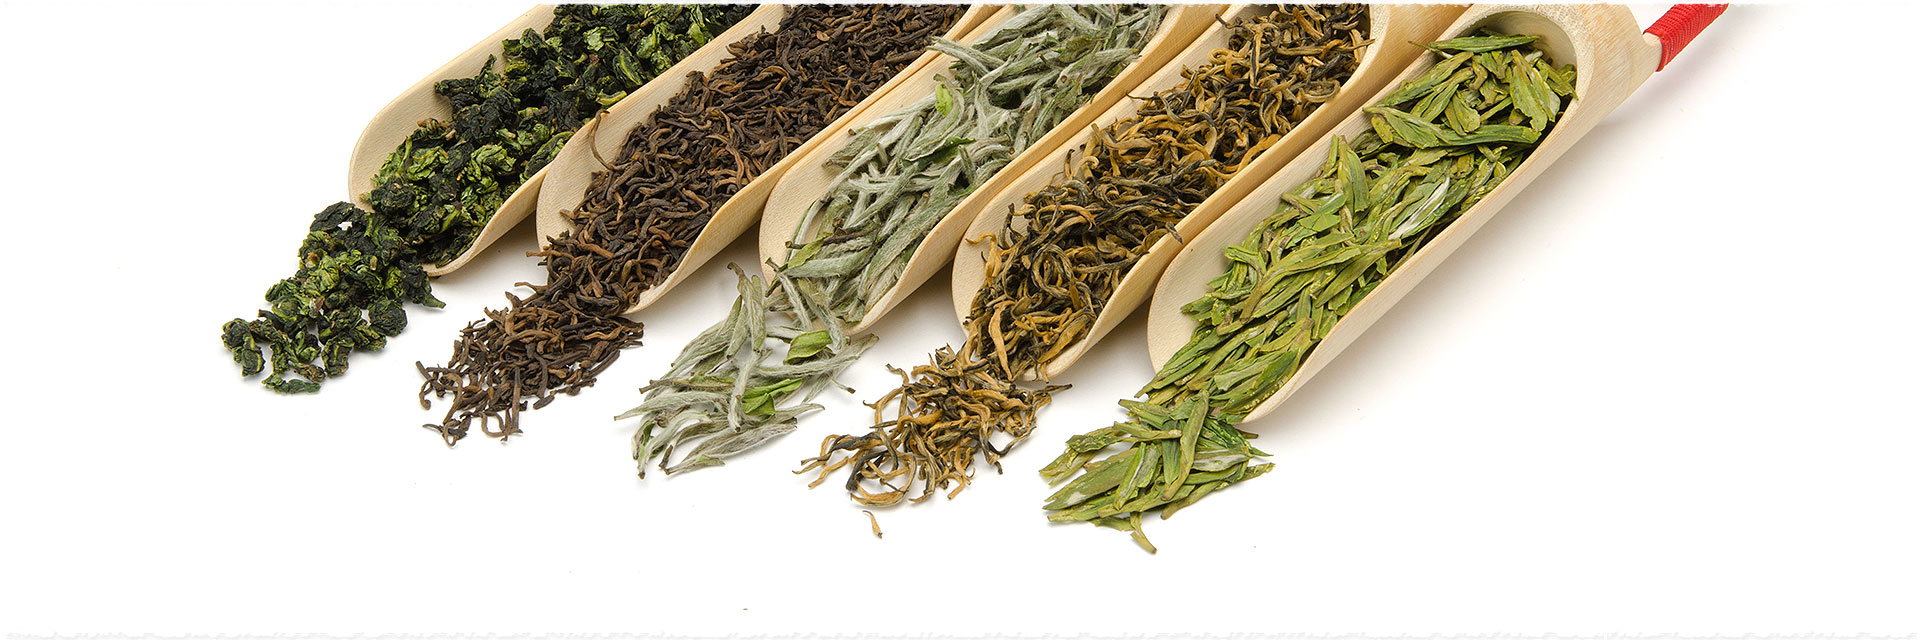 Thé vert, thé noir, quels  thés choisir quand on est débutant ?